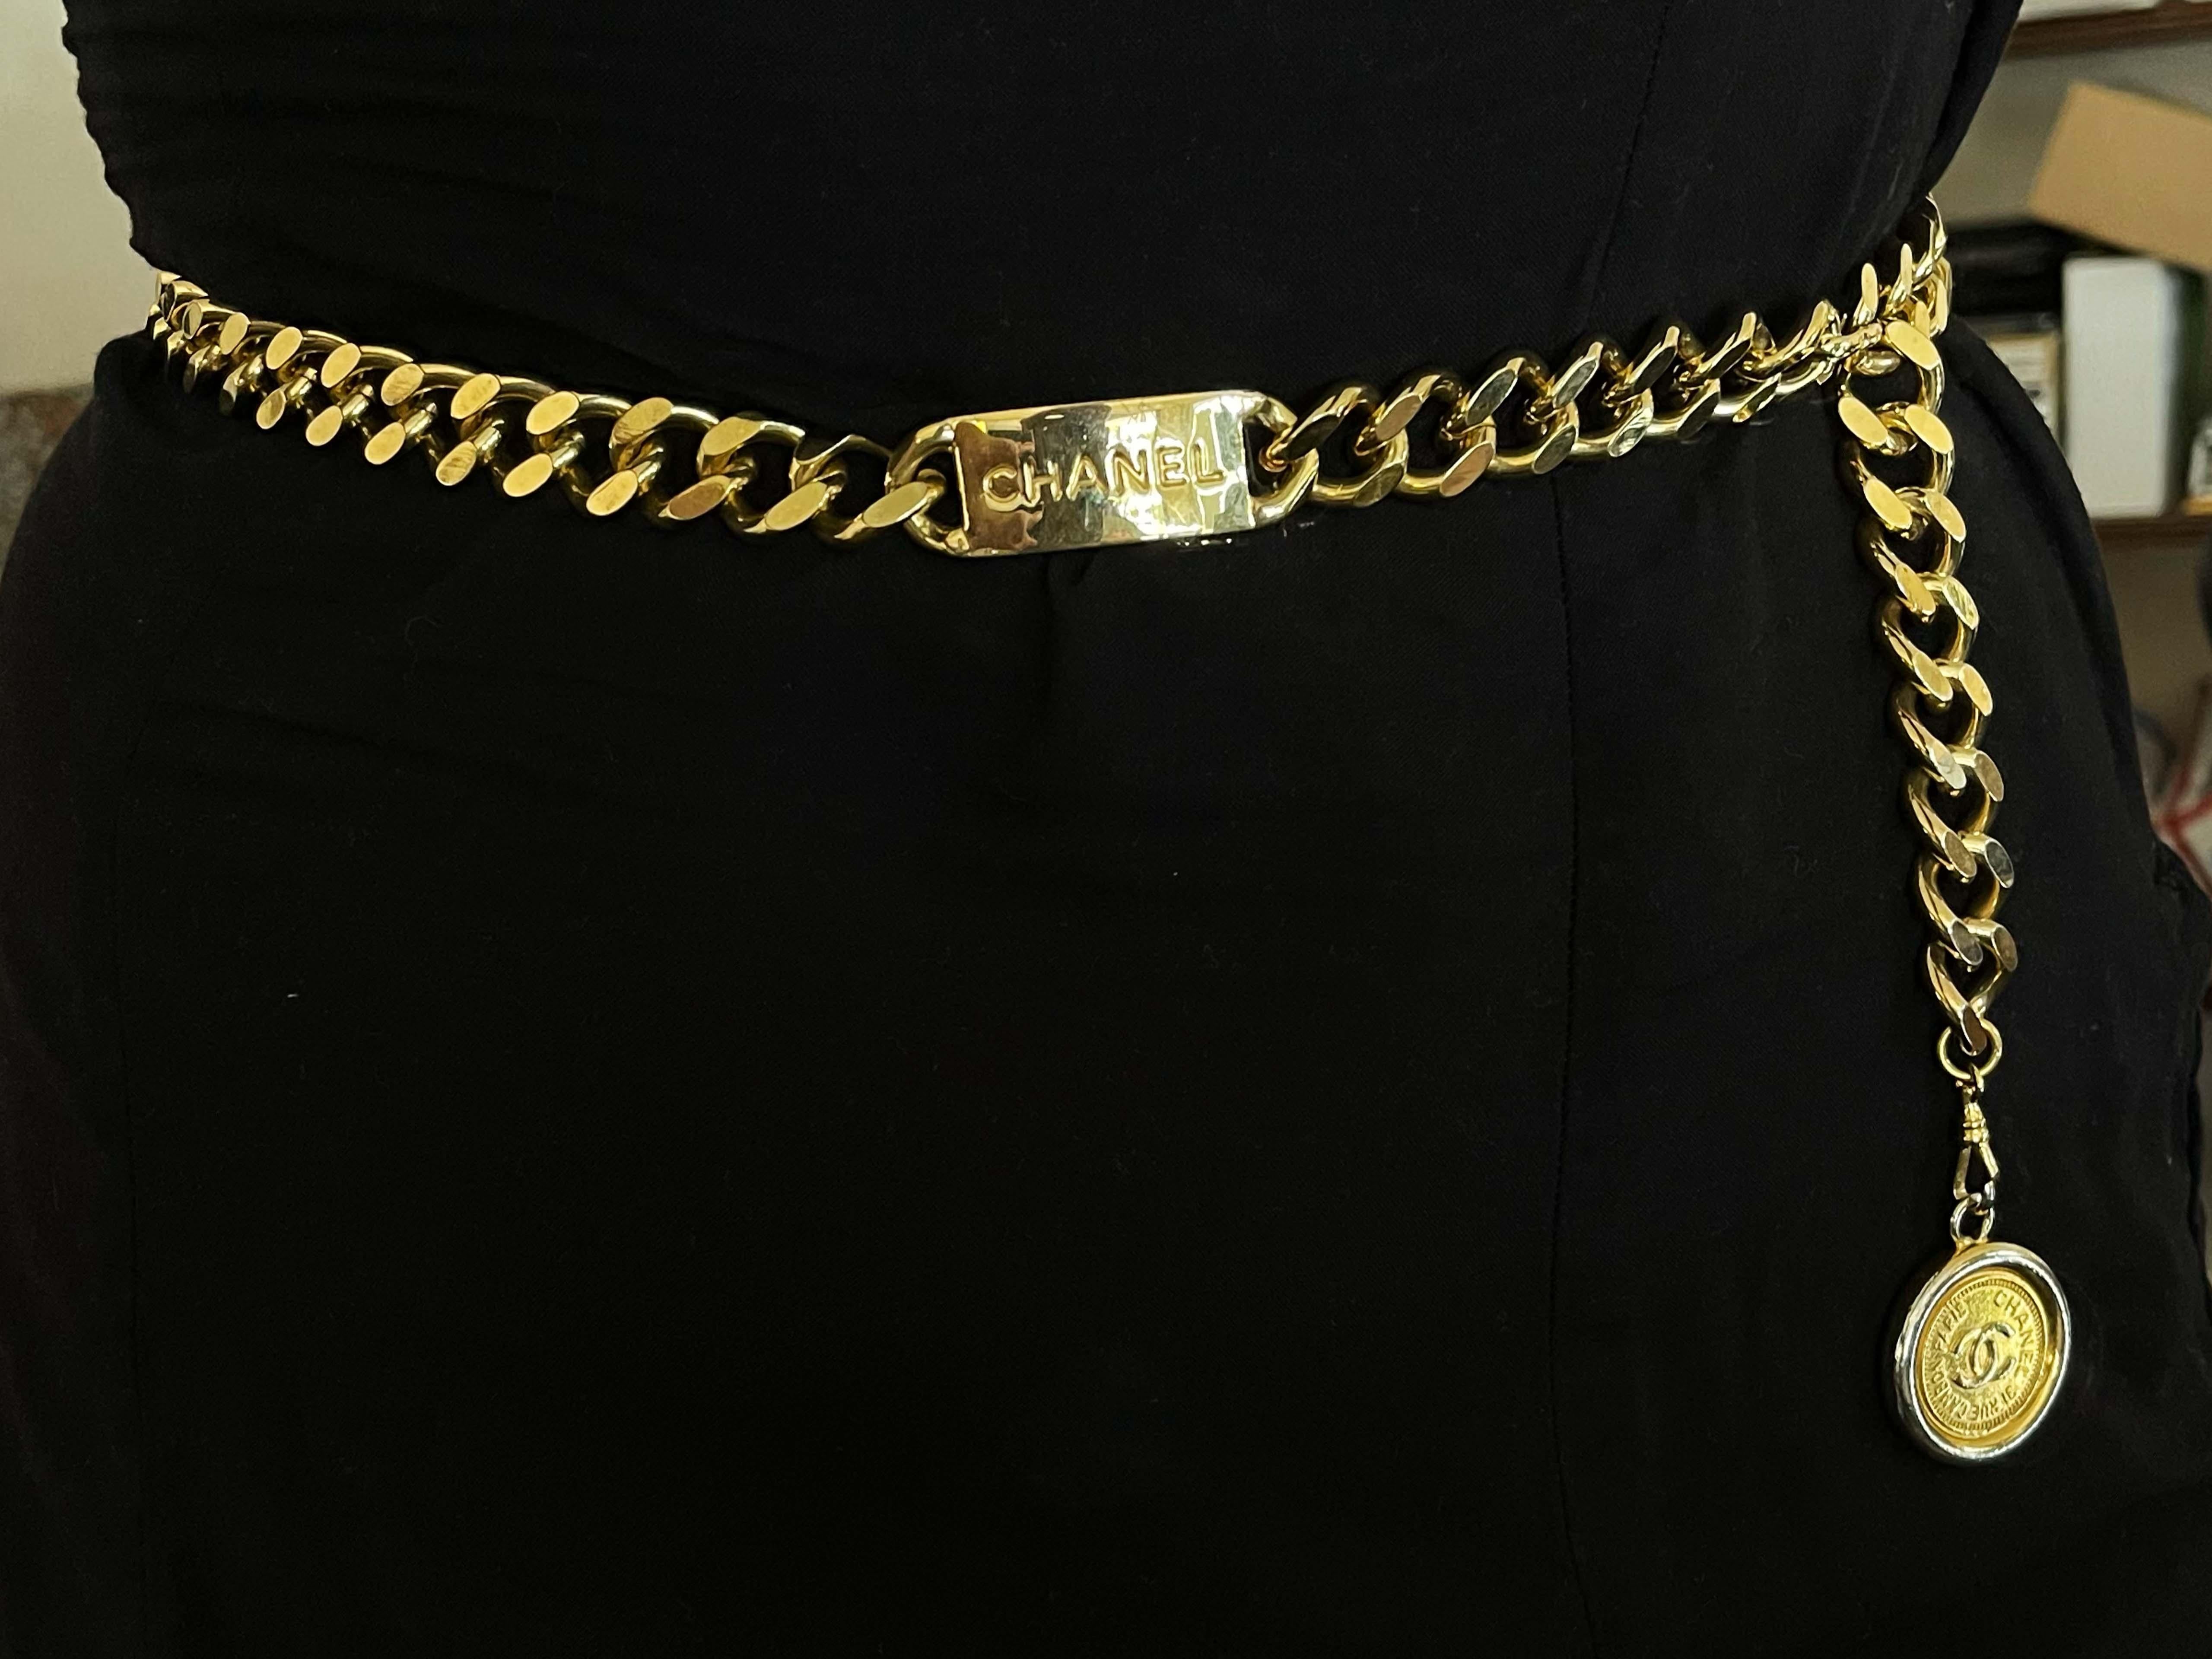 Dieser klassische und schicke Vintage-Kettengürtel von Chanel ist aus vergoldetem Metall gefertigt und mit einem Medaillon-Anhänger mit eingraviertem 